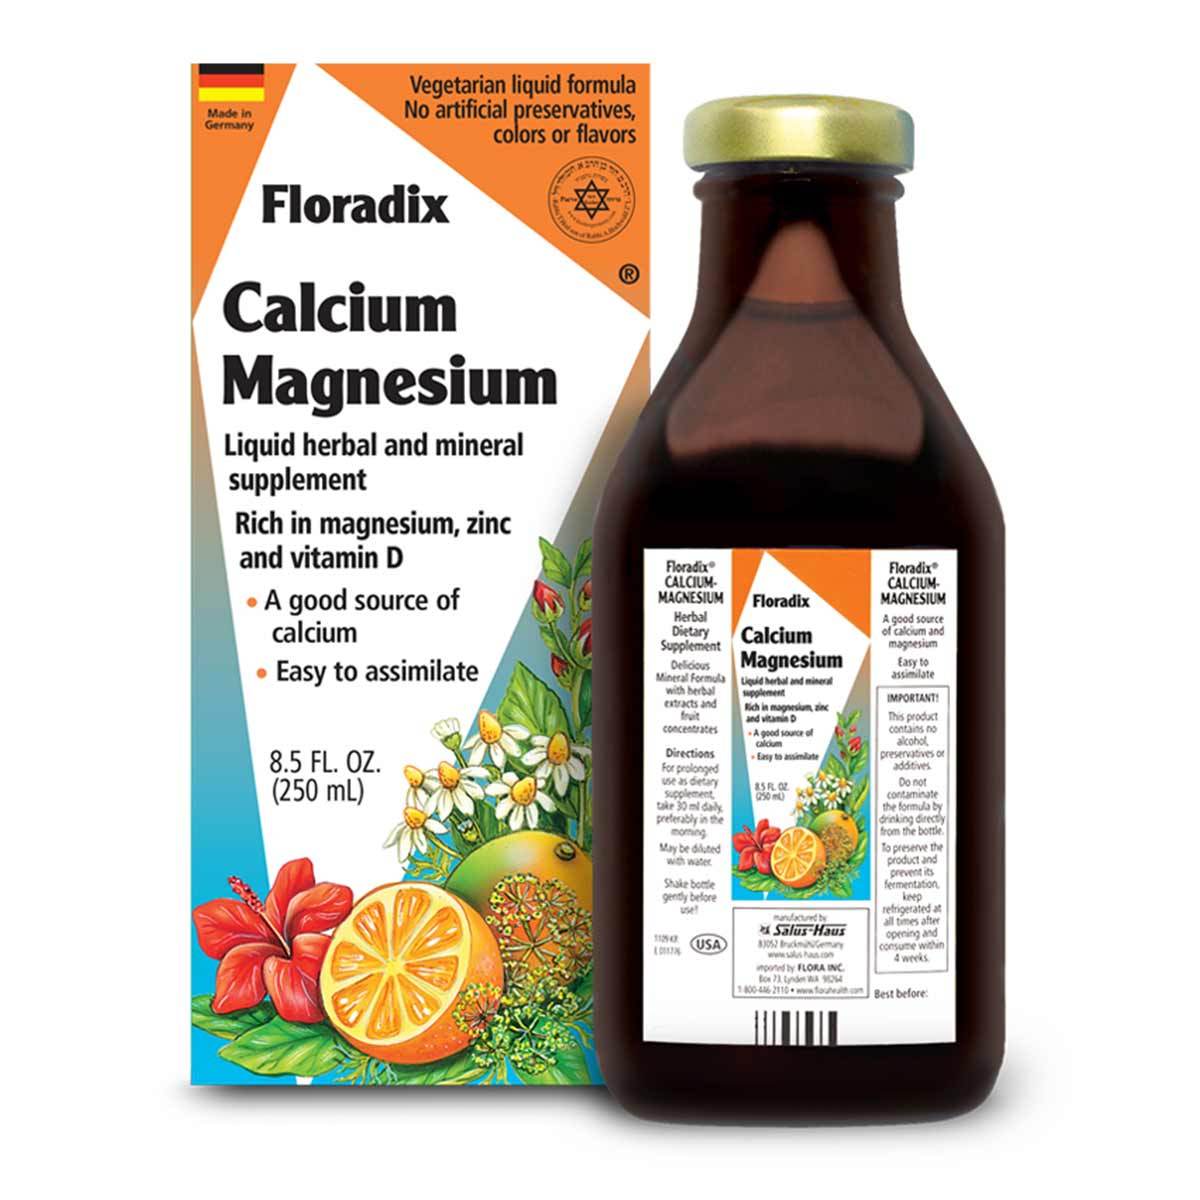 Primary image of Floradix Calcium-Magnesium Liquid